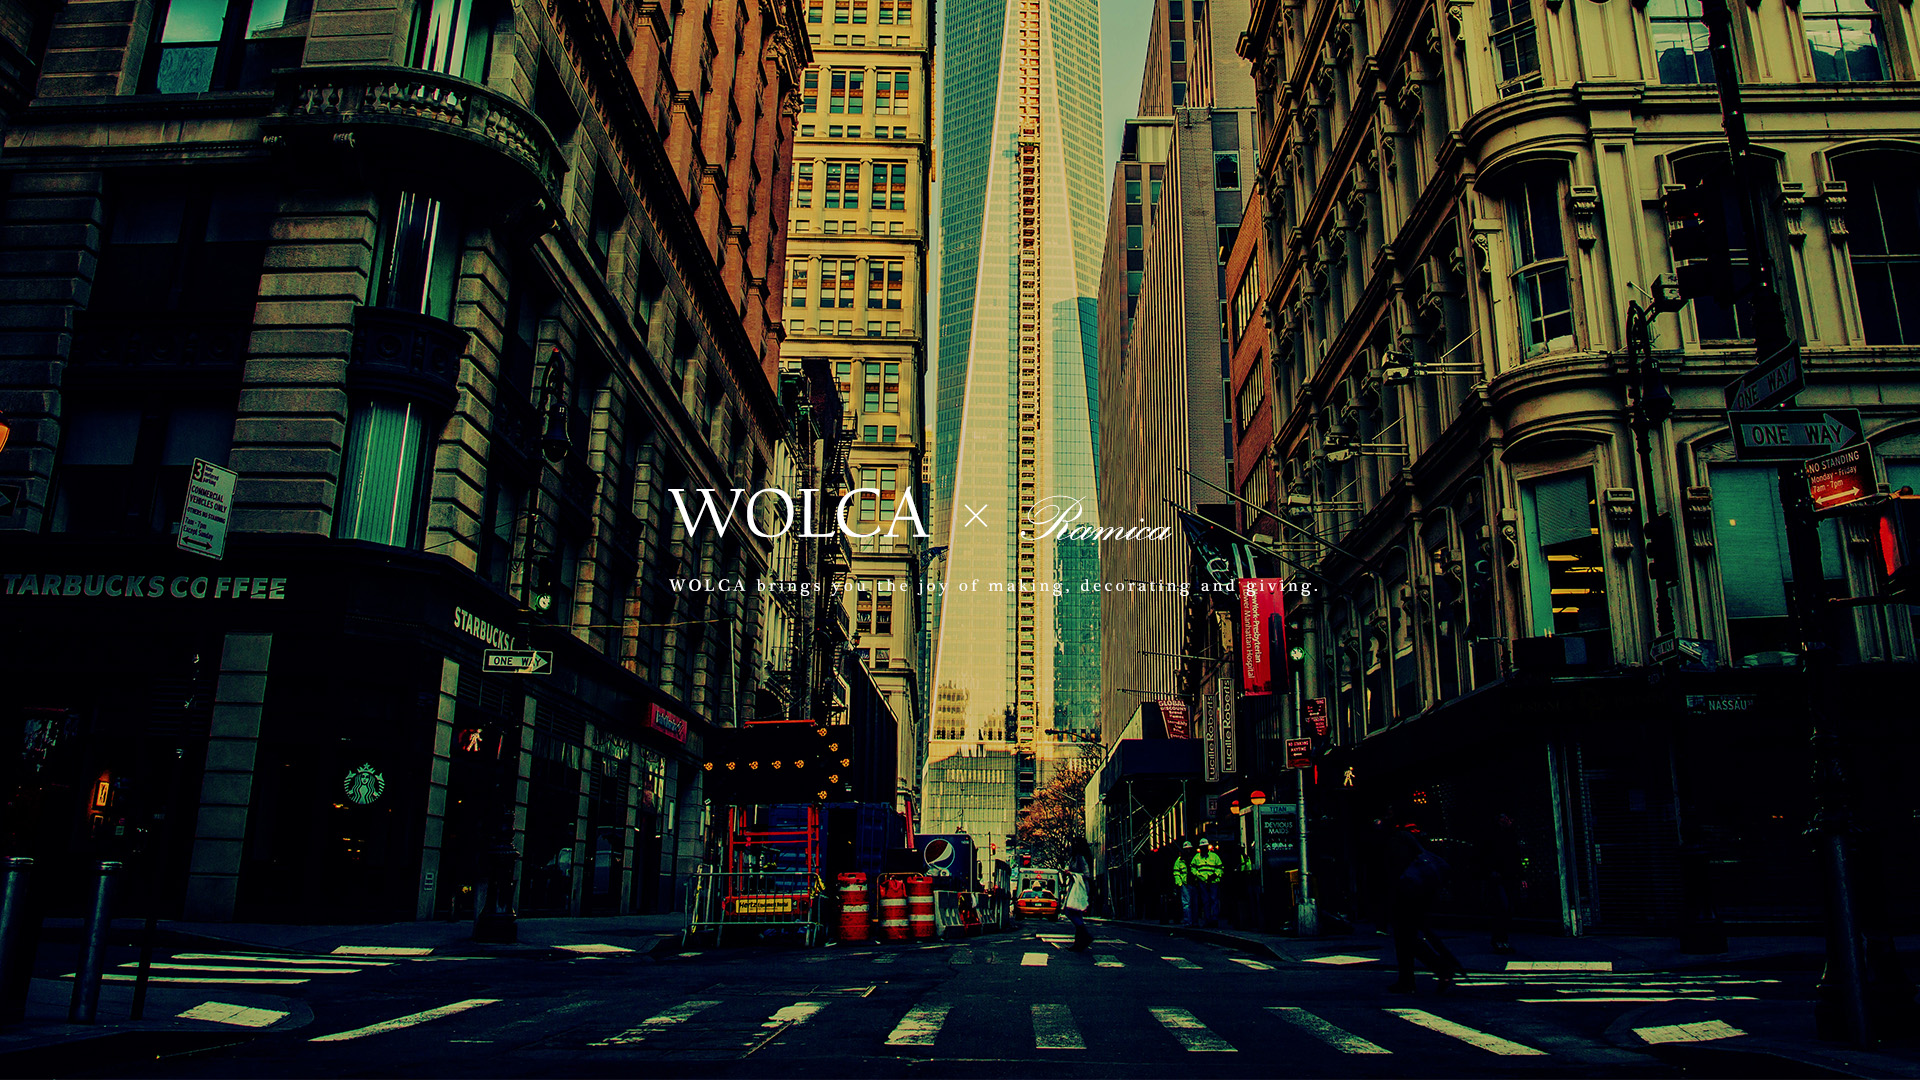 デスクトップpc用壁紙 都会をかっこよく写した写真 Wolca